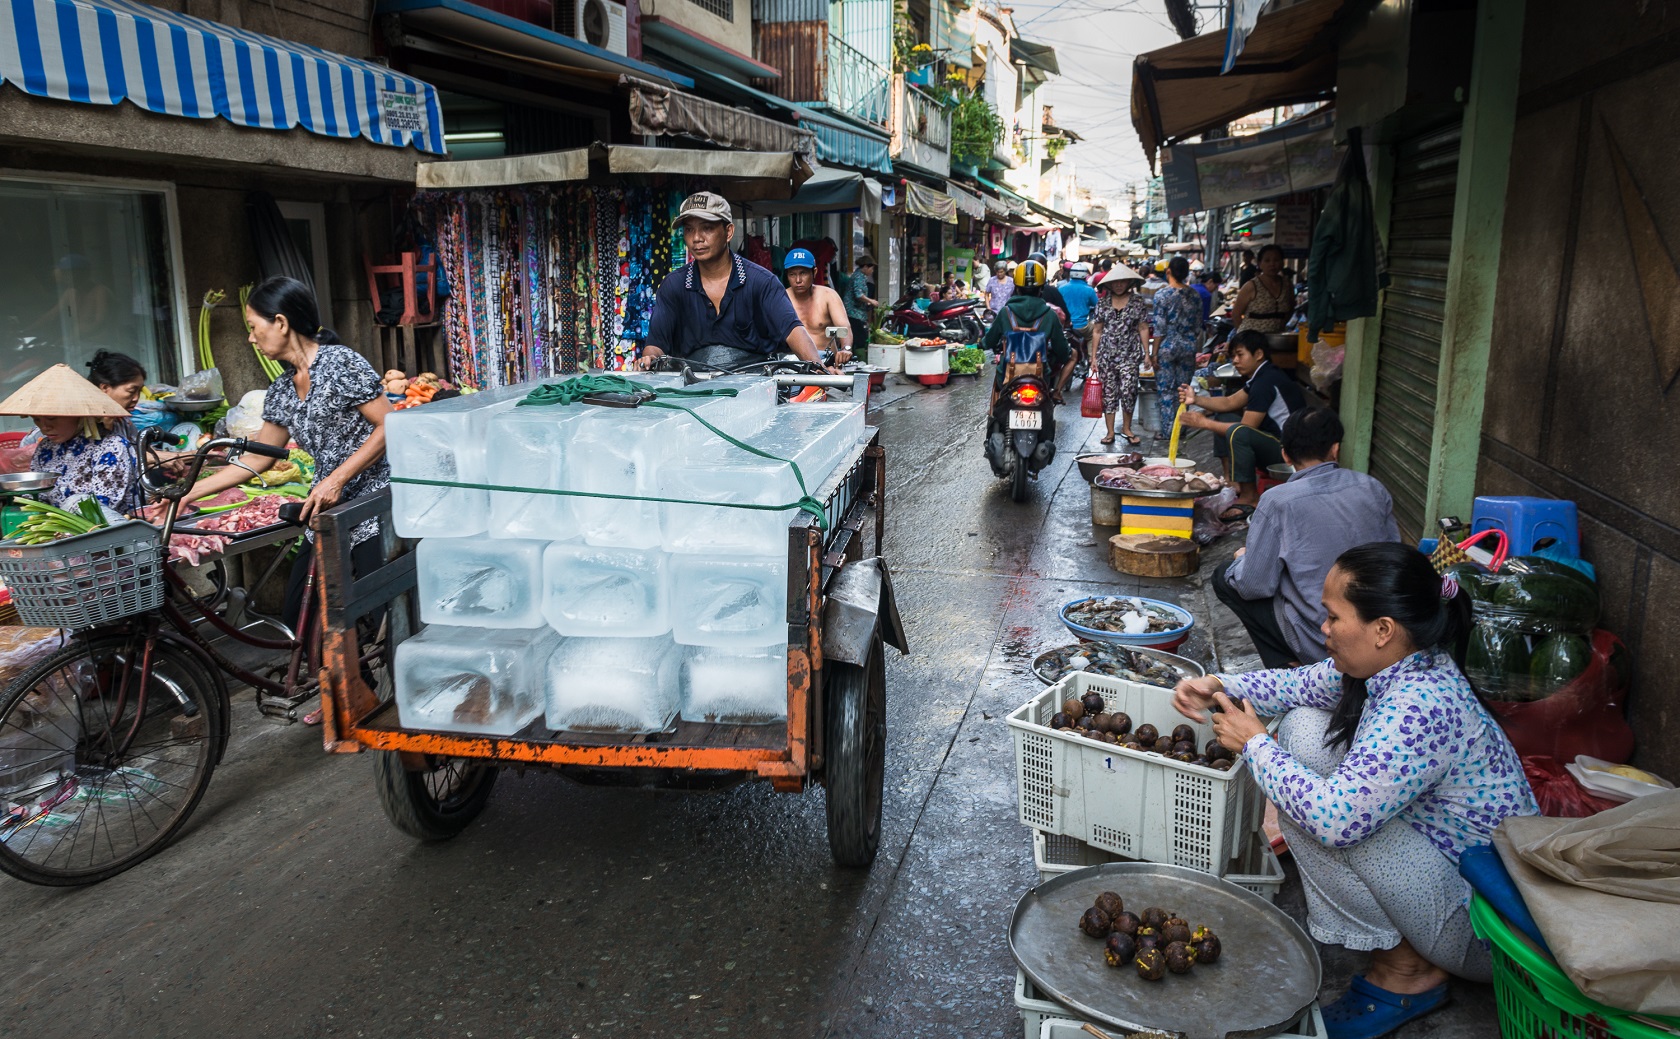 Bunt, laut, voll: Ho-Chi-Minh-Stadts Märkte